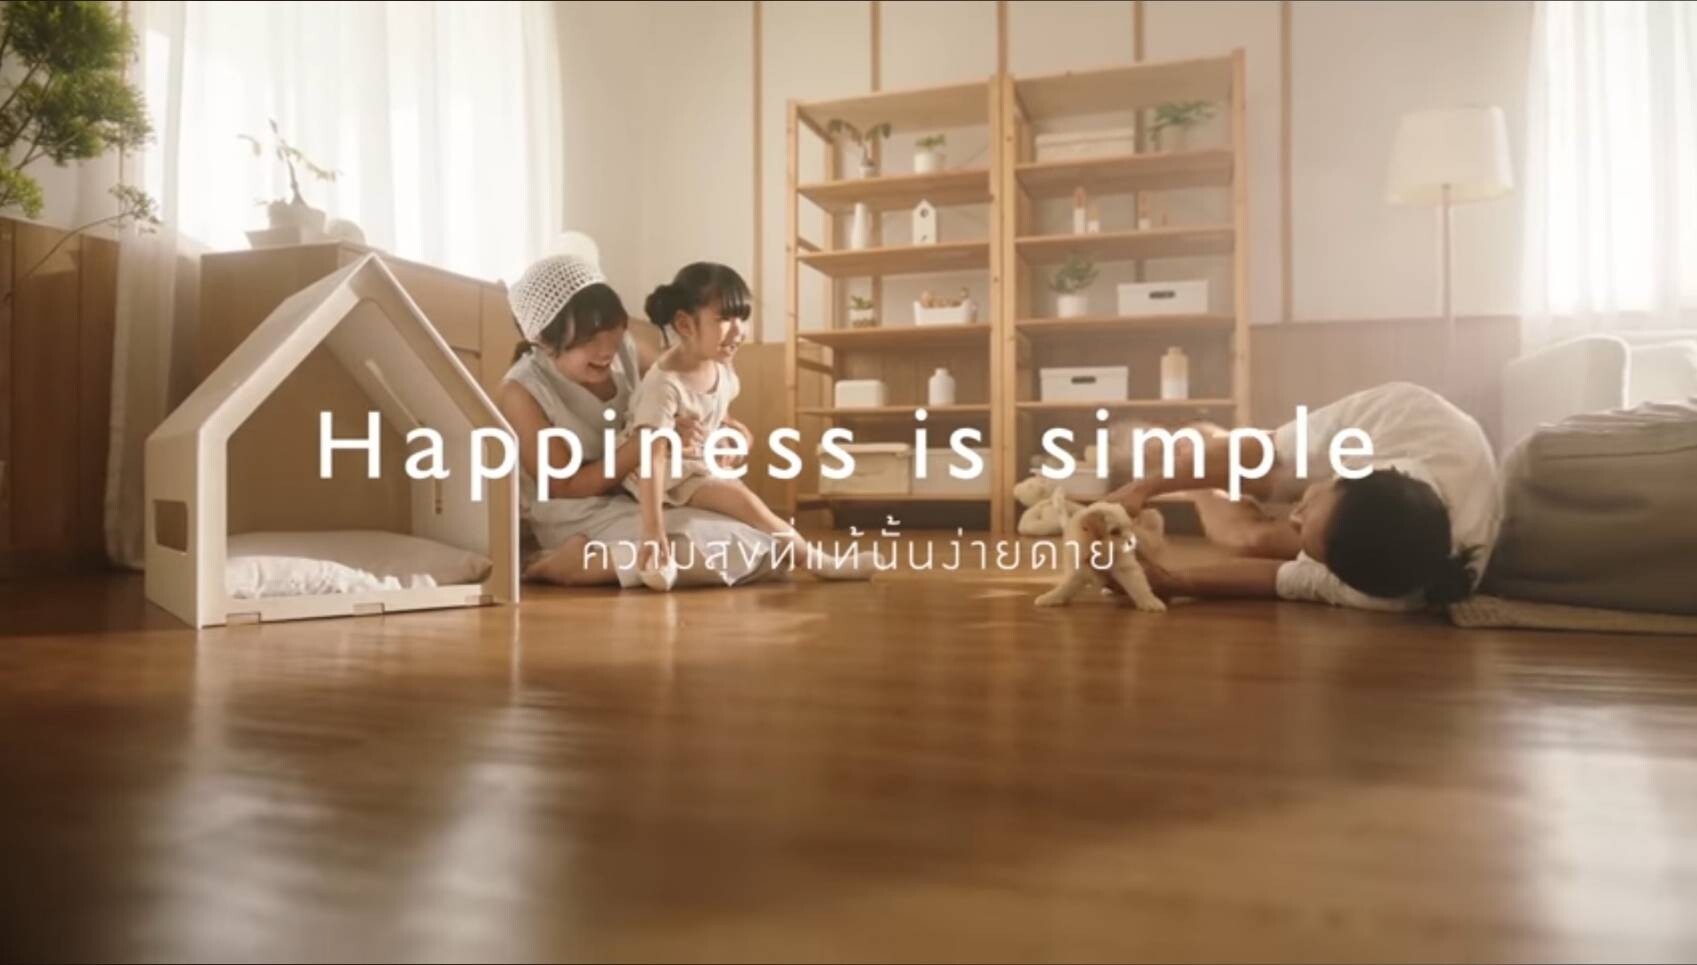 "อารียา" ผุดไอเดีย Music Marketing ผ่านแคมเปญ "Happiness is Simple" ชวน "บอย ตรัย" ถ่ายทอดความสุขที่เรียบง่ายในเพลง "ง่ายดาย"